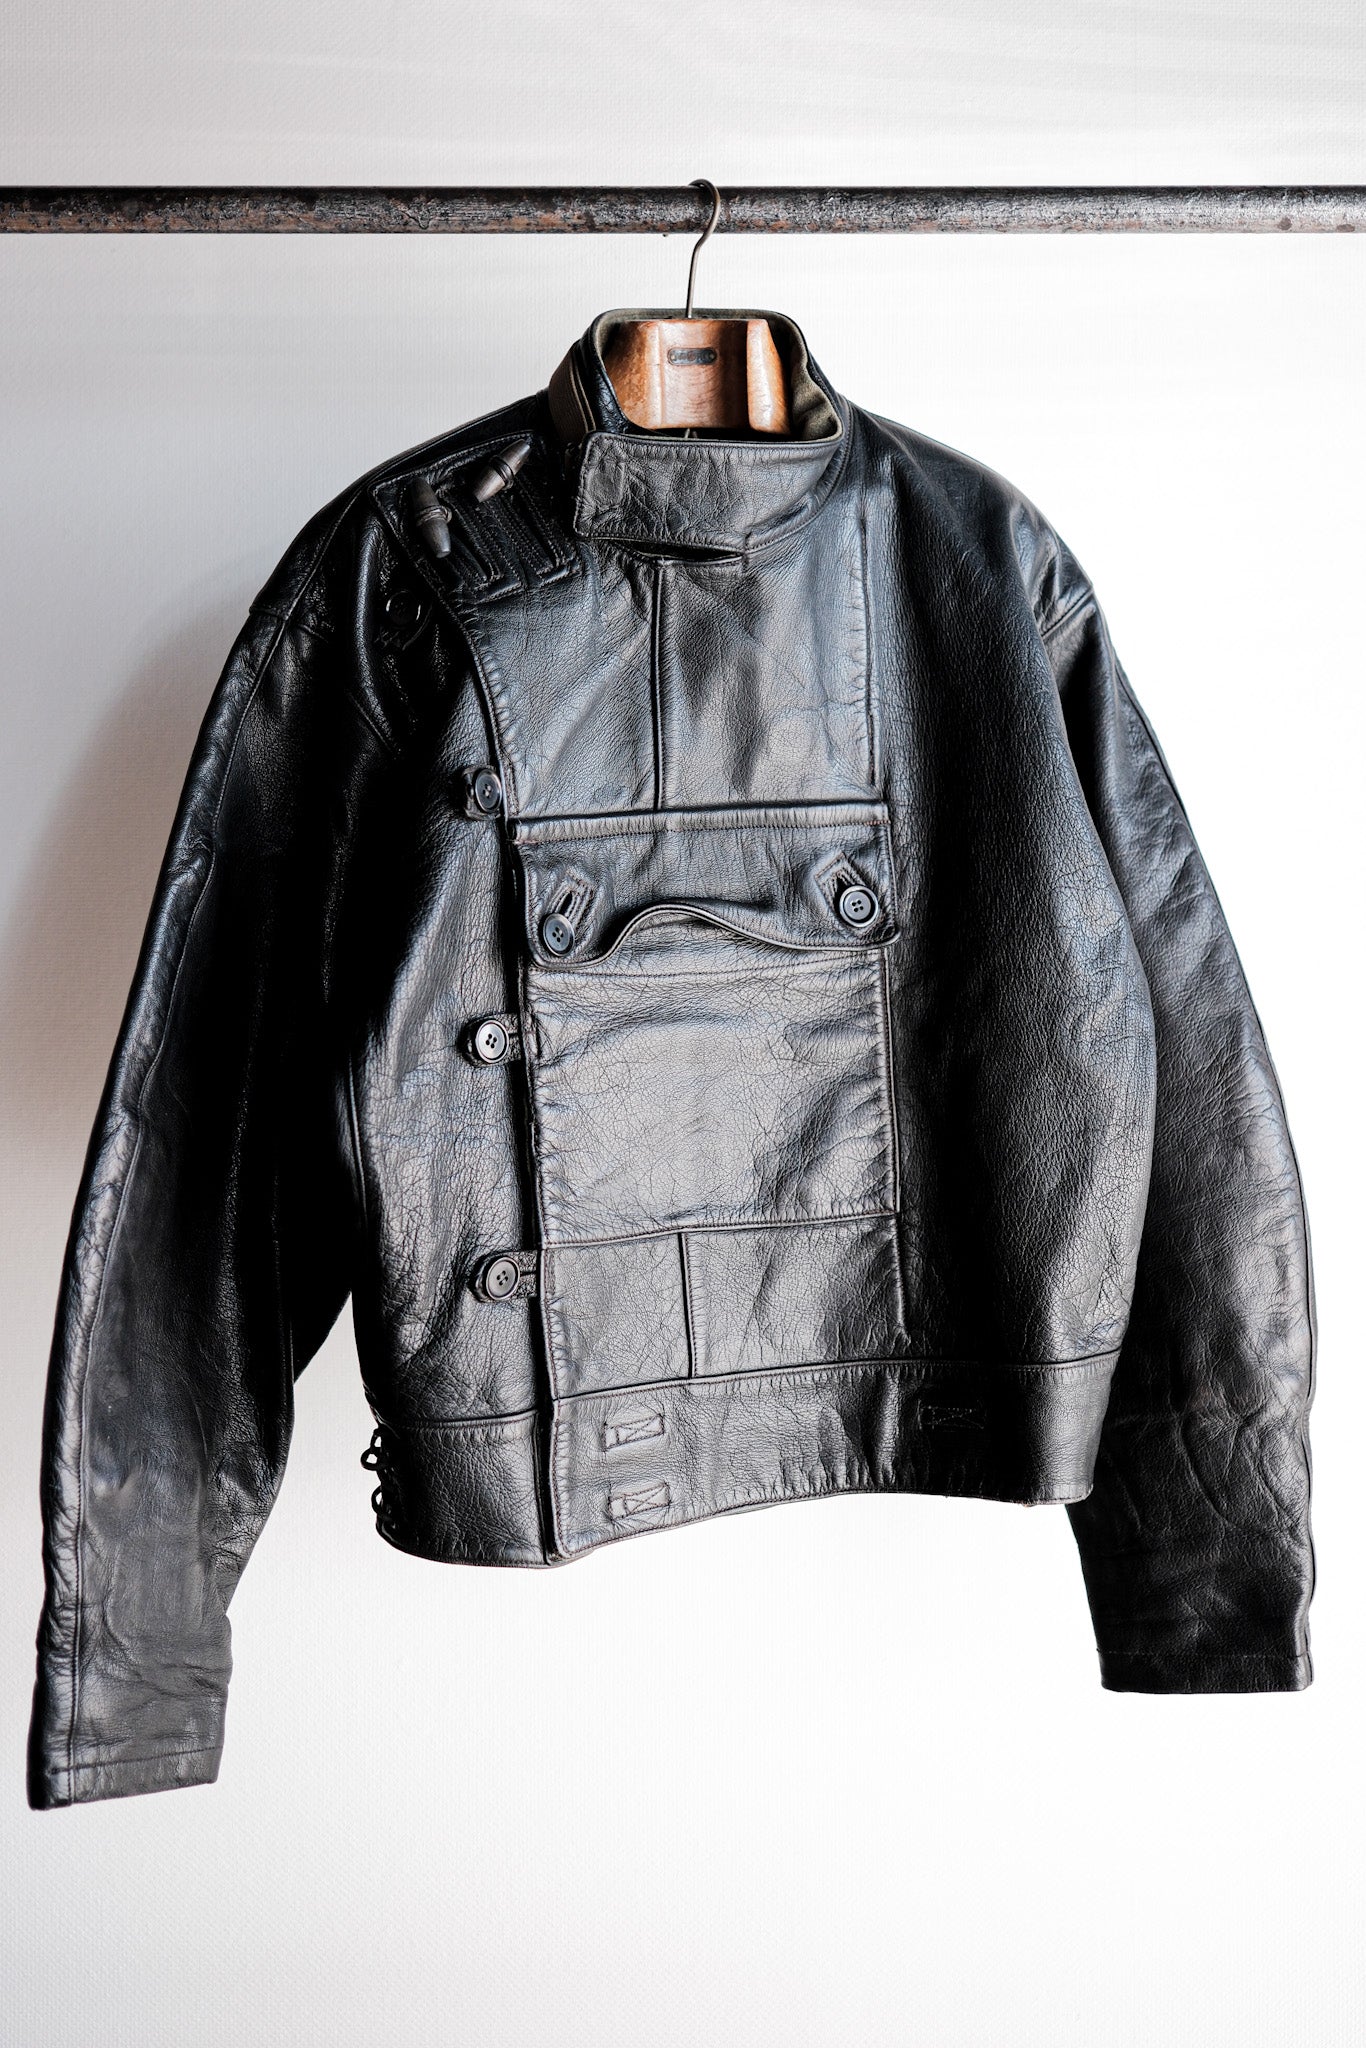 [〜50年代]瑞典軍隊調度騎手皮革摩托車夾克